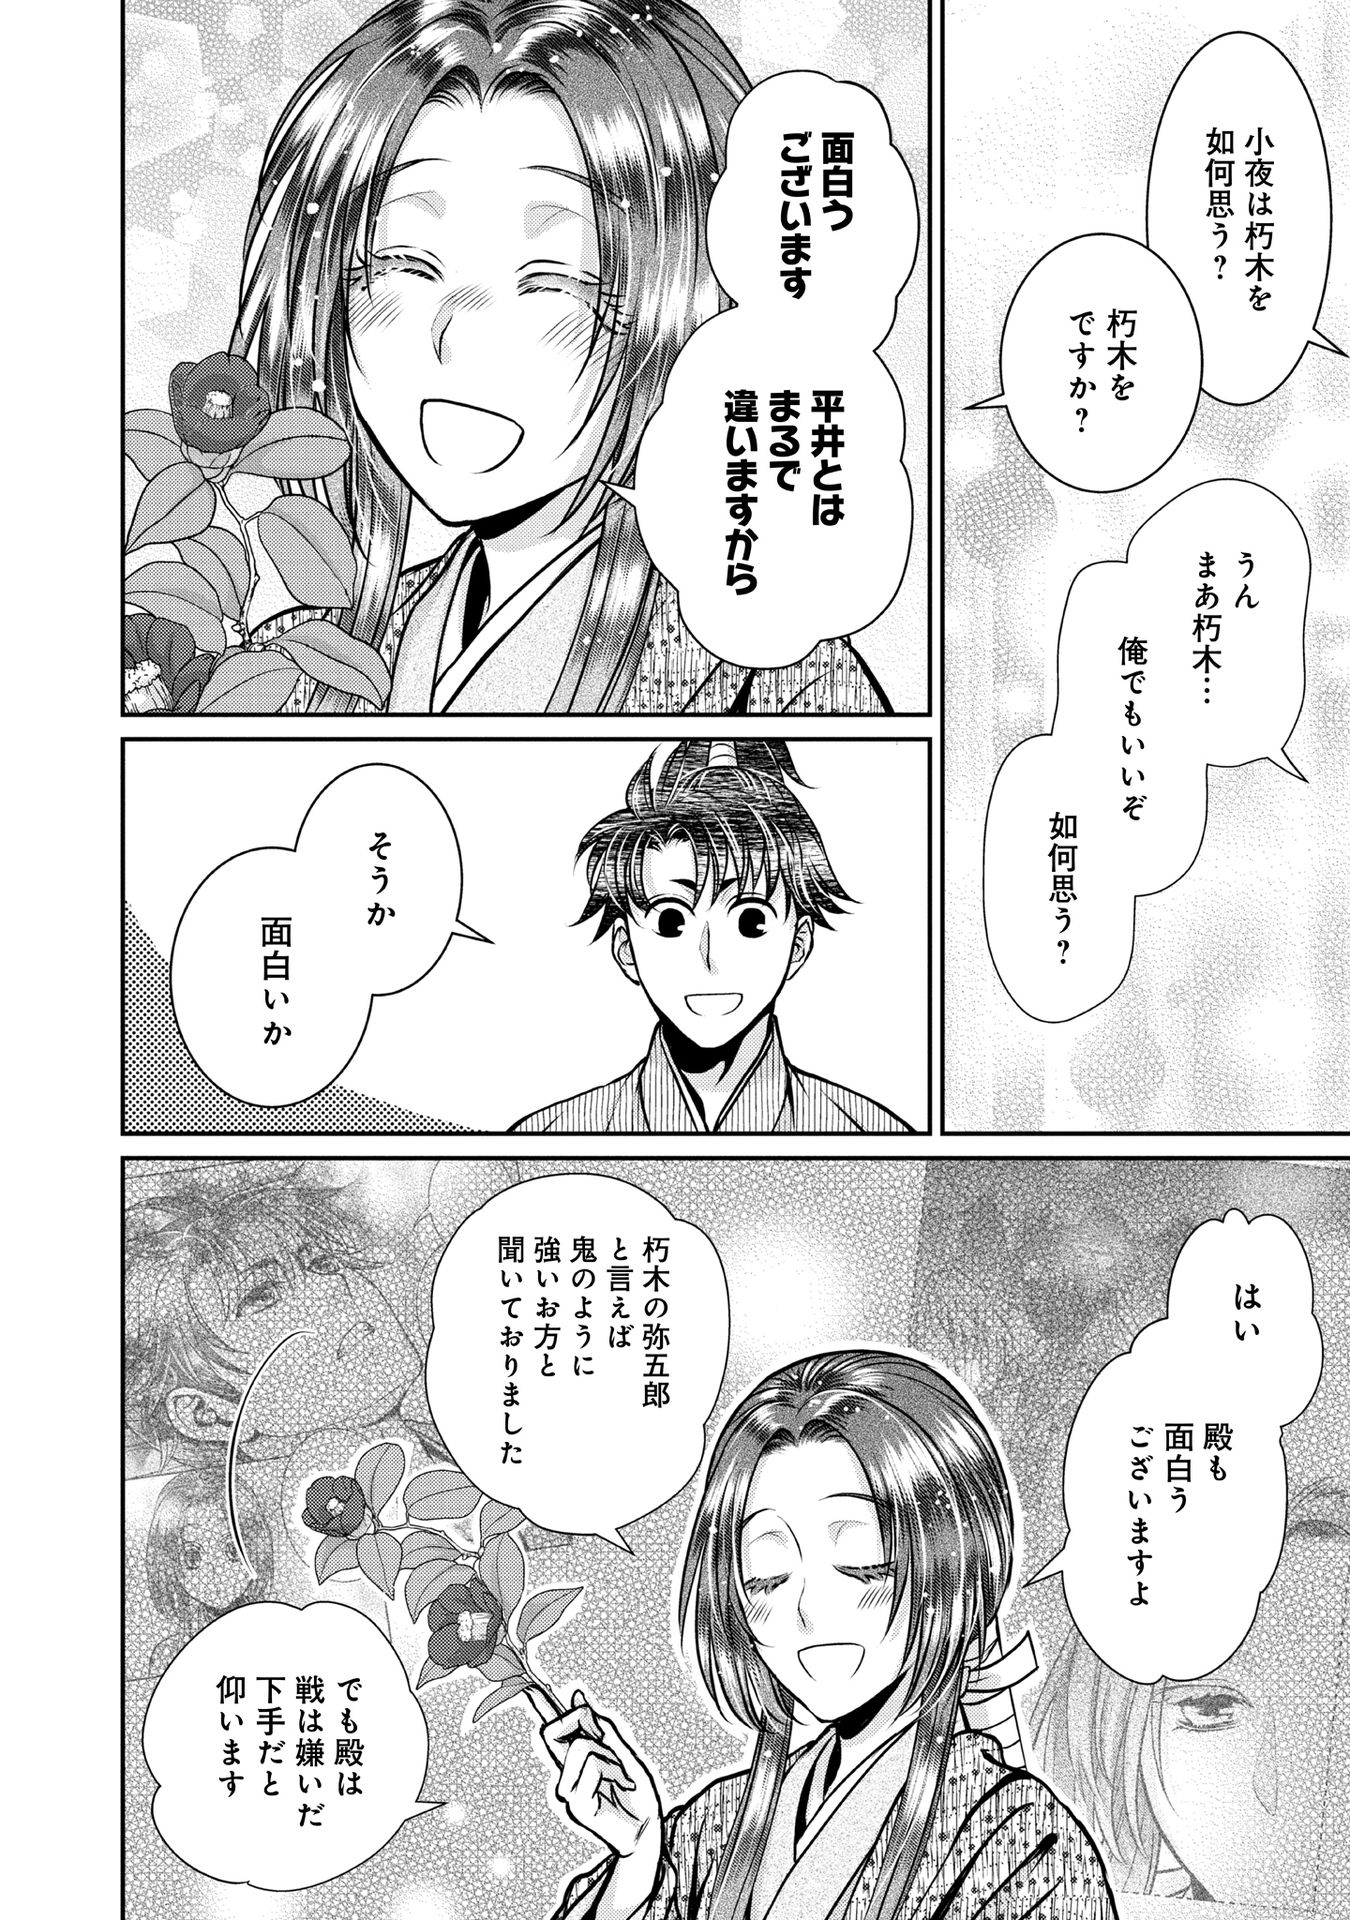 Afumi no Umi – Minamo ga Yureru Toki - Chapter 16 - Page 20